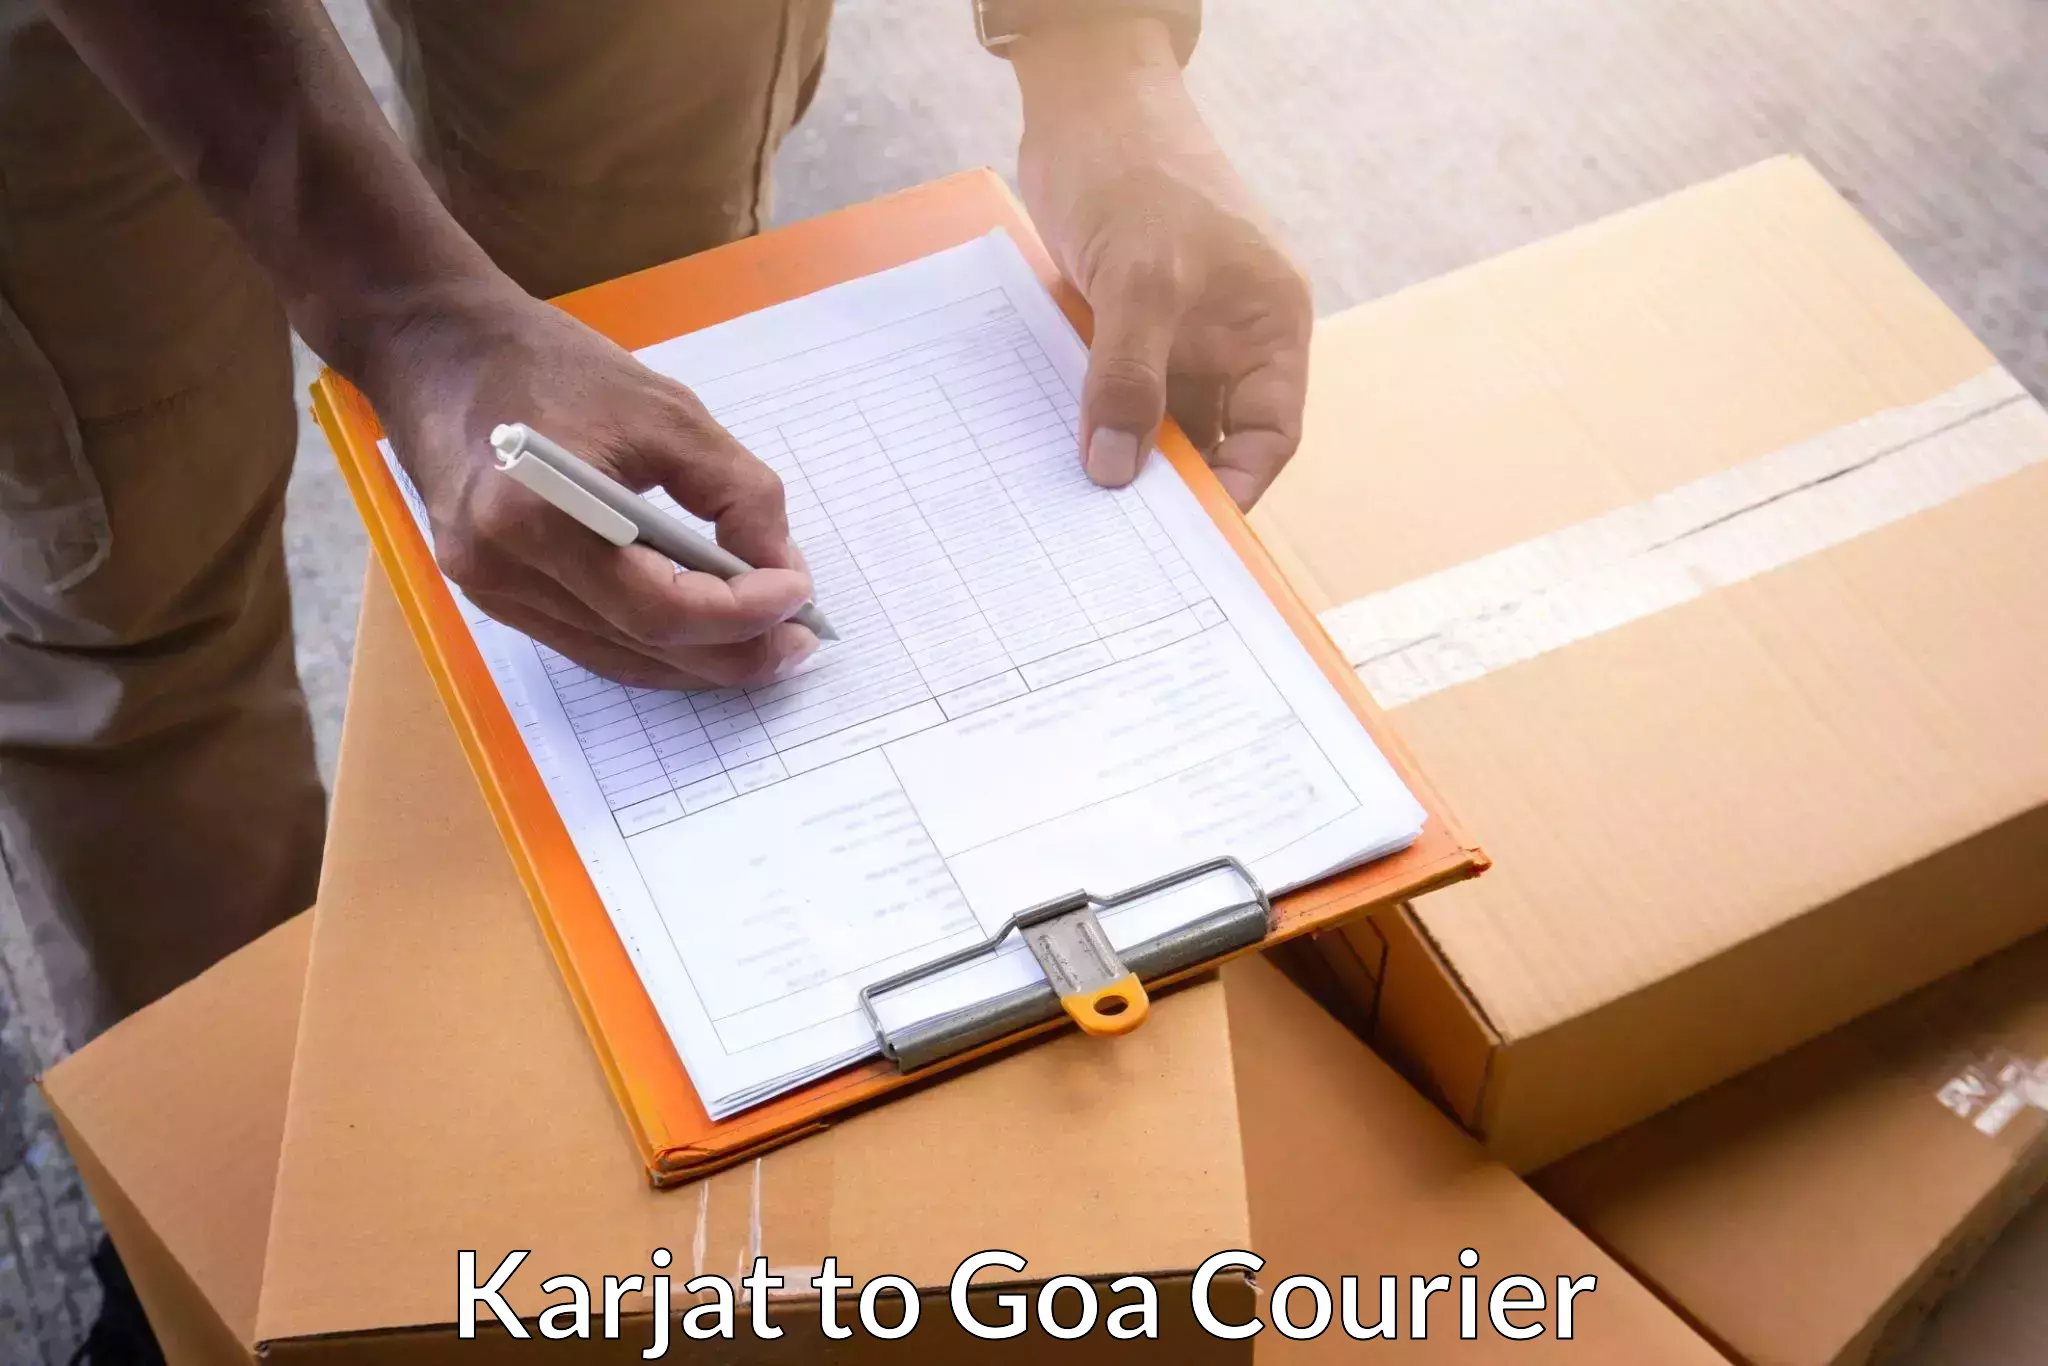 Pharmaceutical courier in Karjat to Panjim